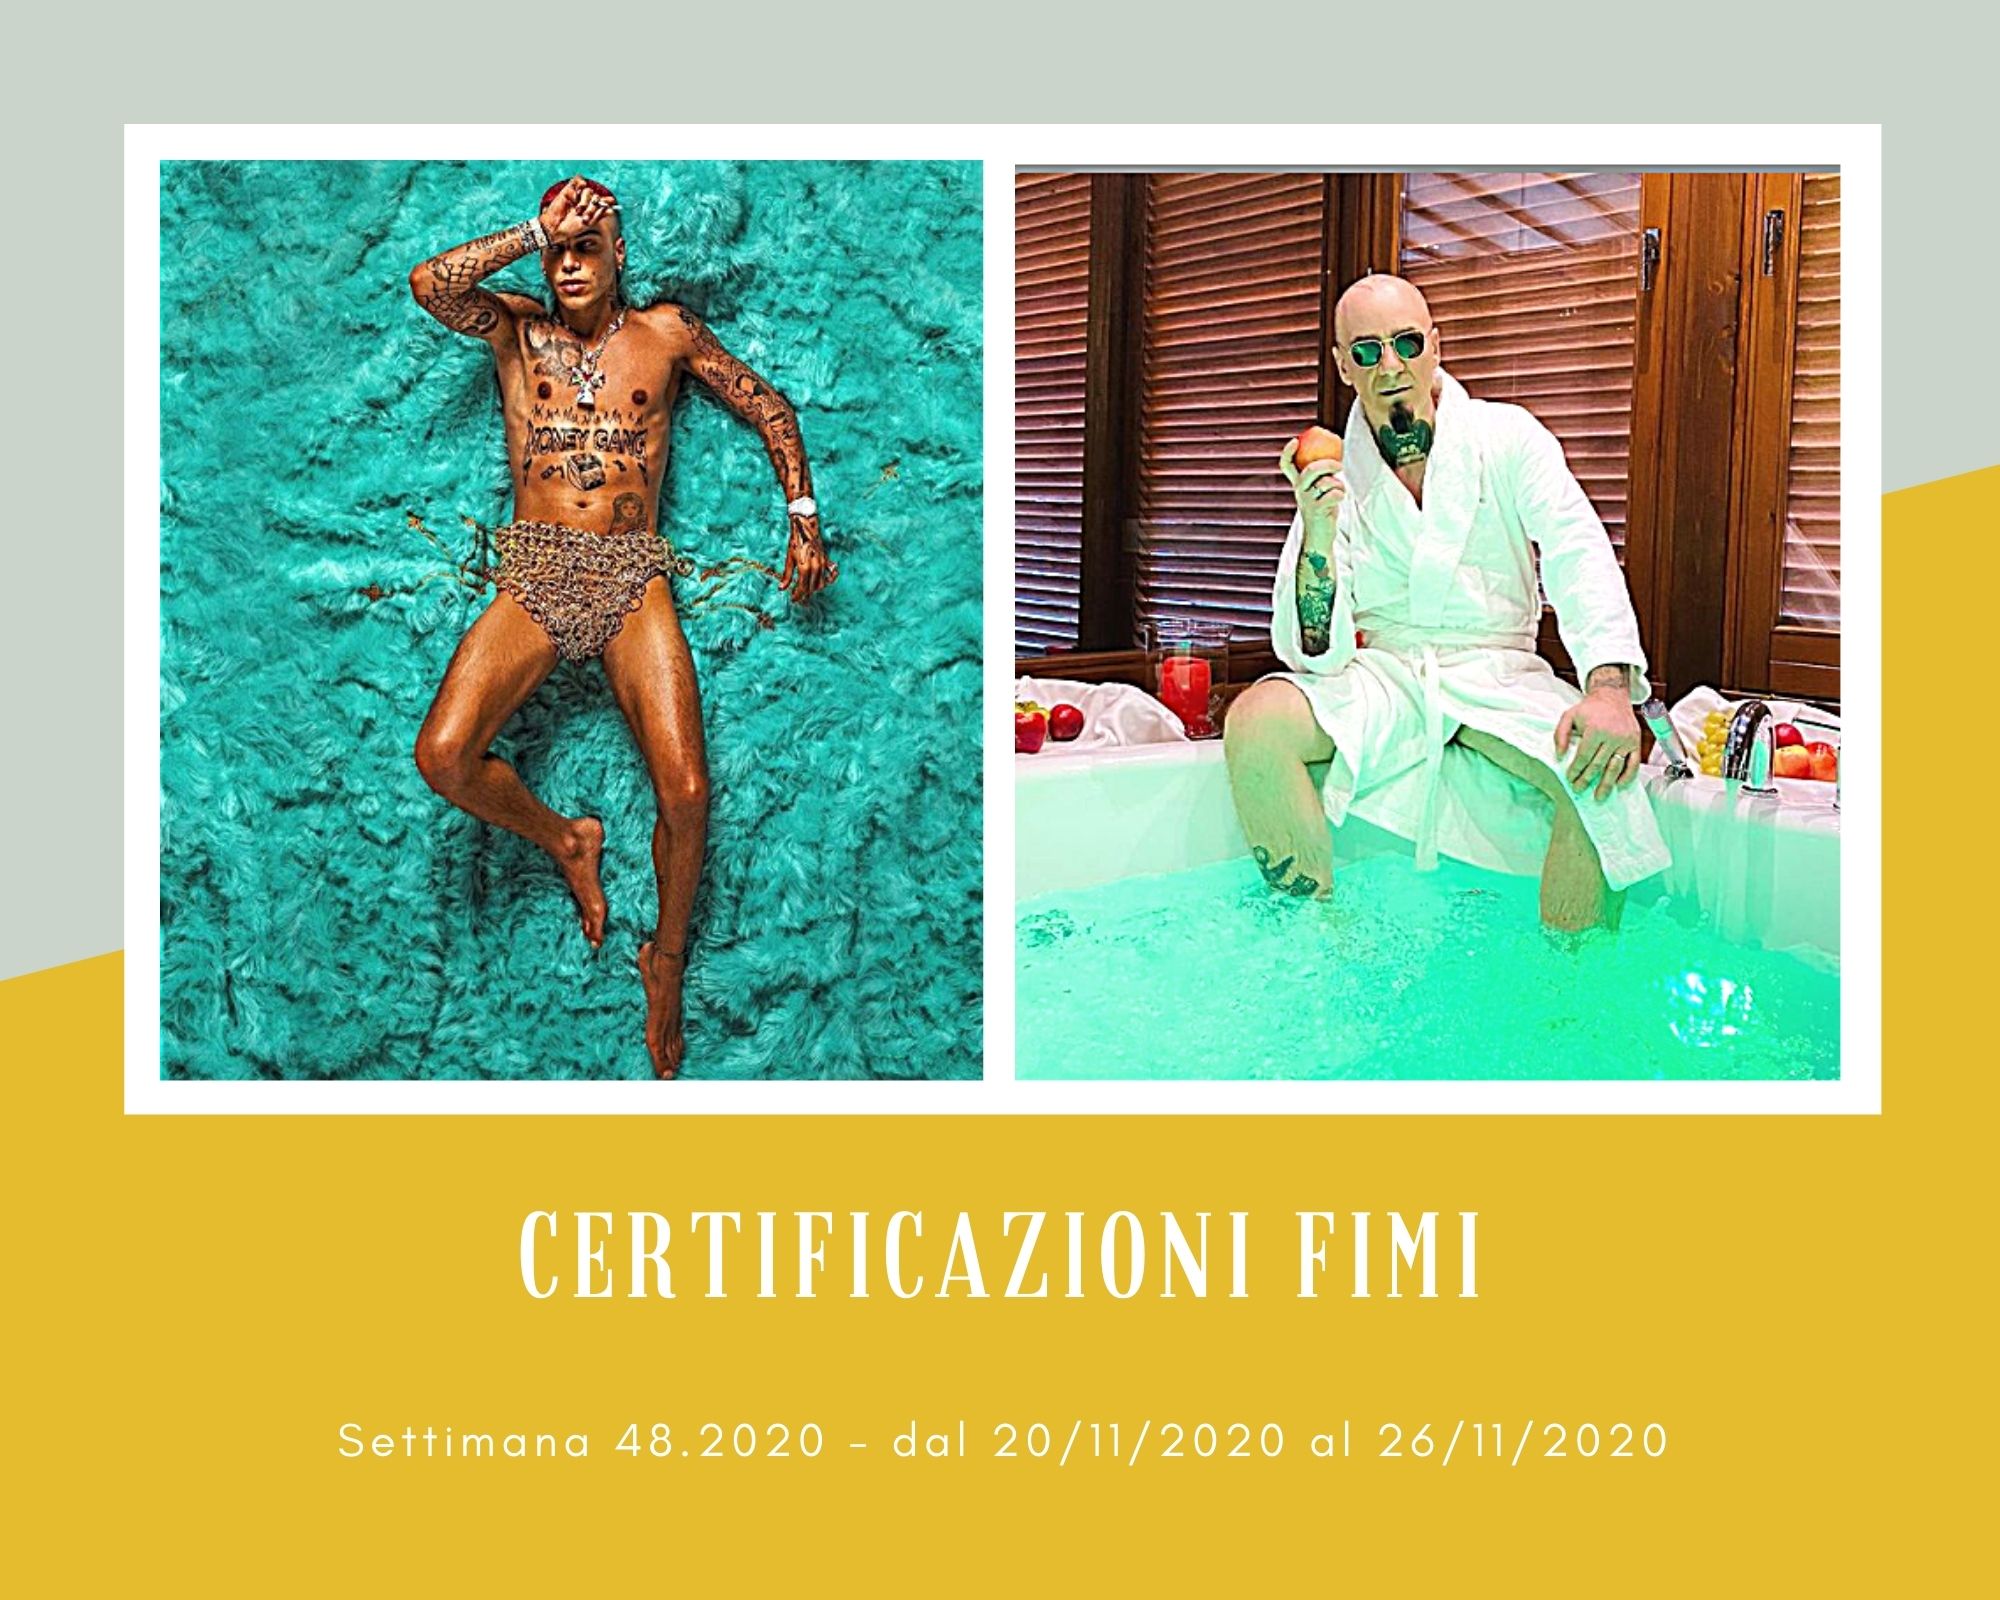 Certificazioni FIMI, week 48. Sfera Ebbasta più famoso di J-Ax